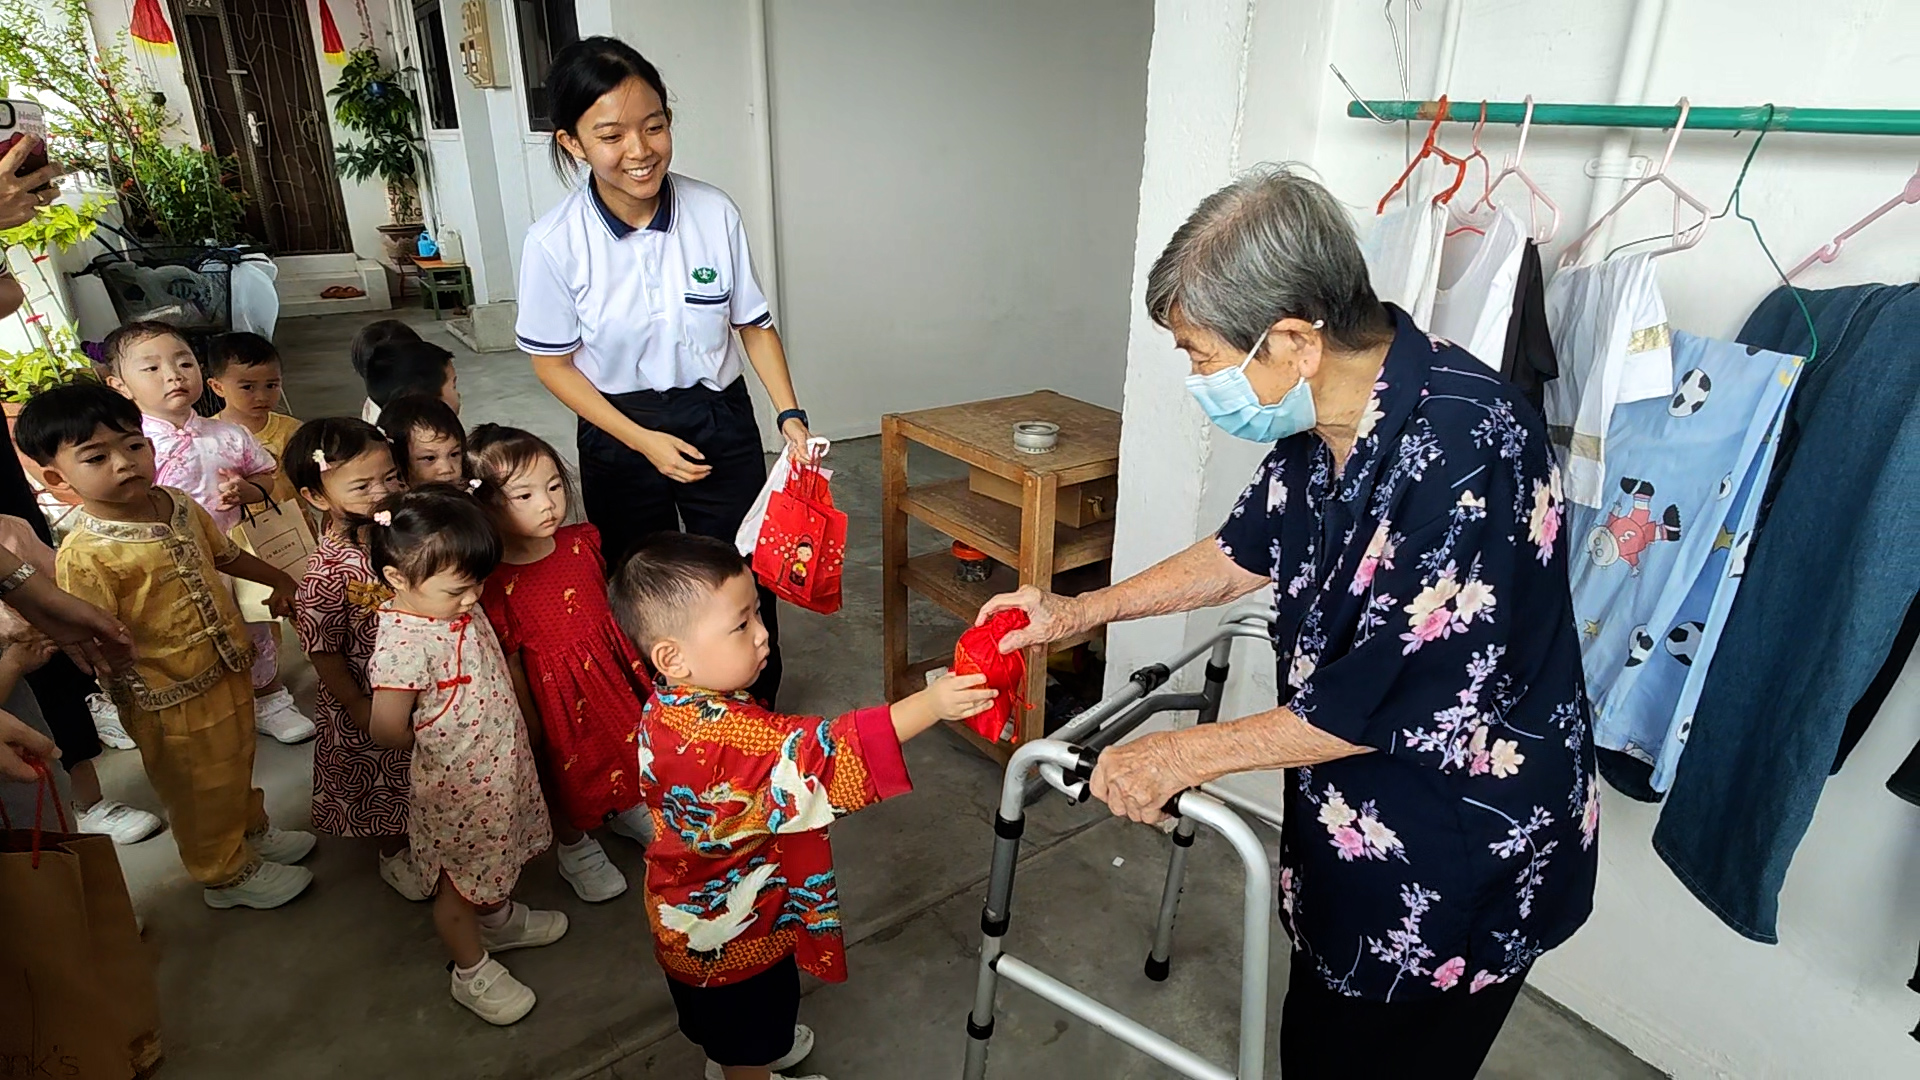 Children raise funds to send Lantern Festival blessings to the elderly